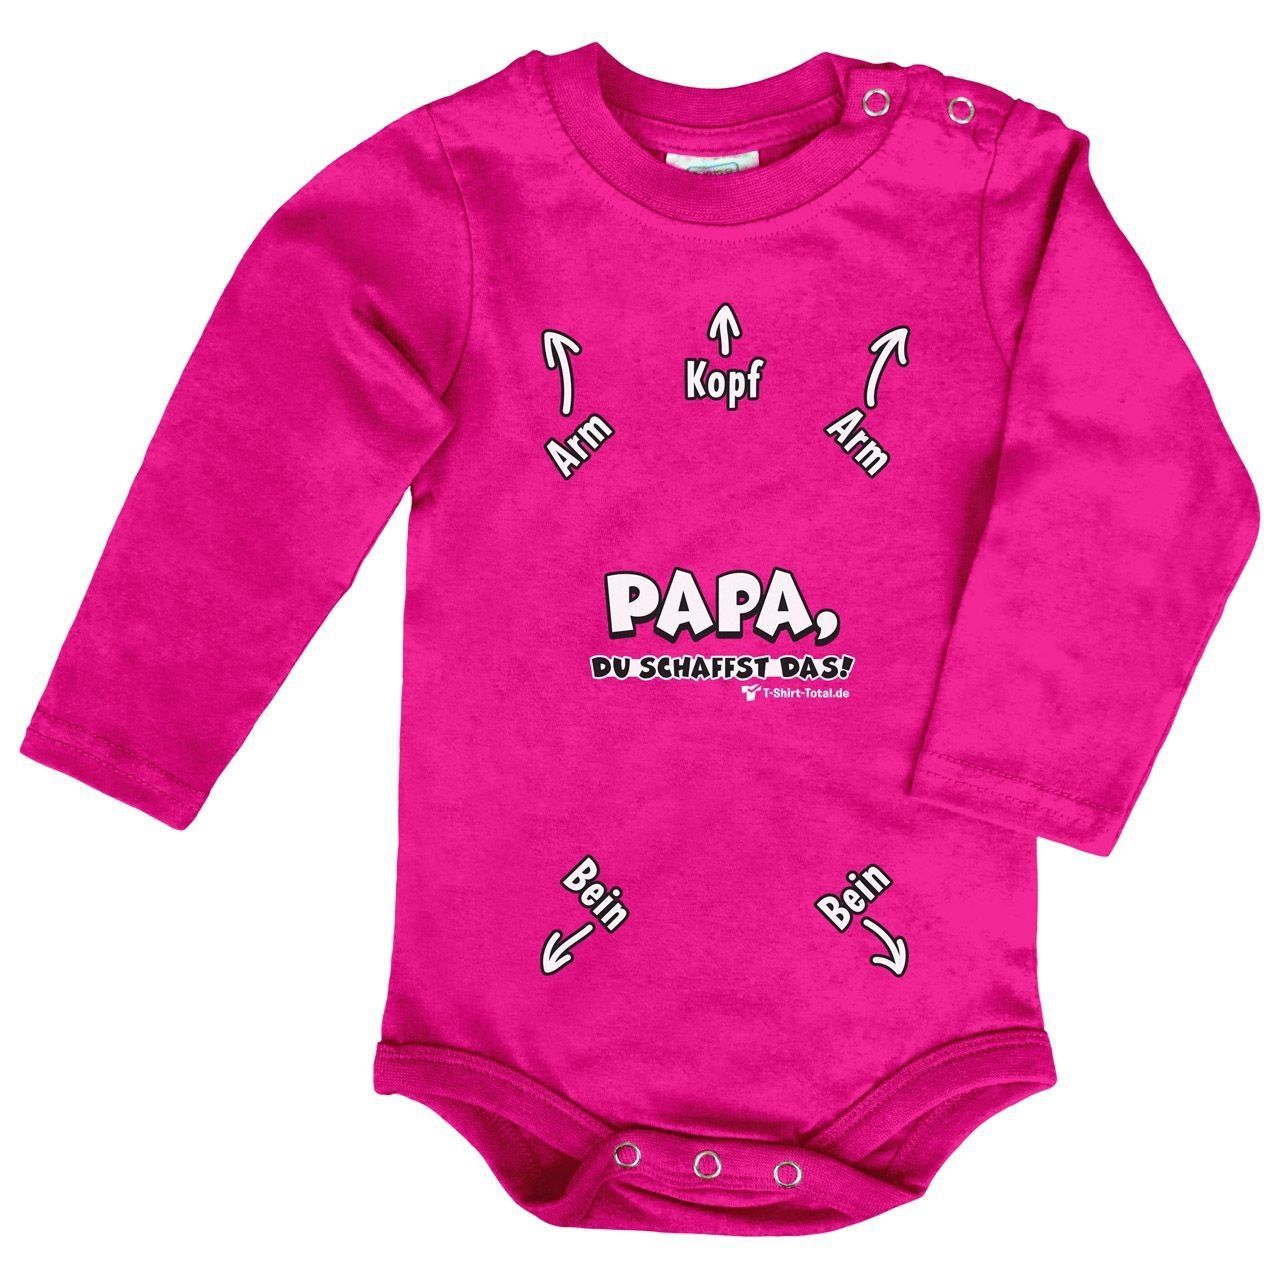 Papa du schaffst das Baby Body Langarm pink 68 / 74